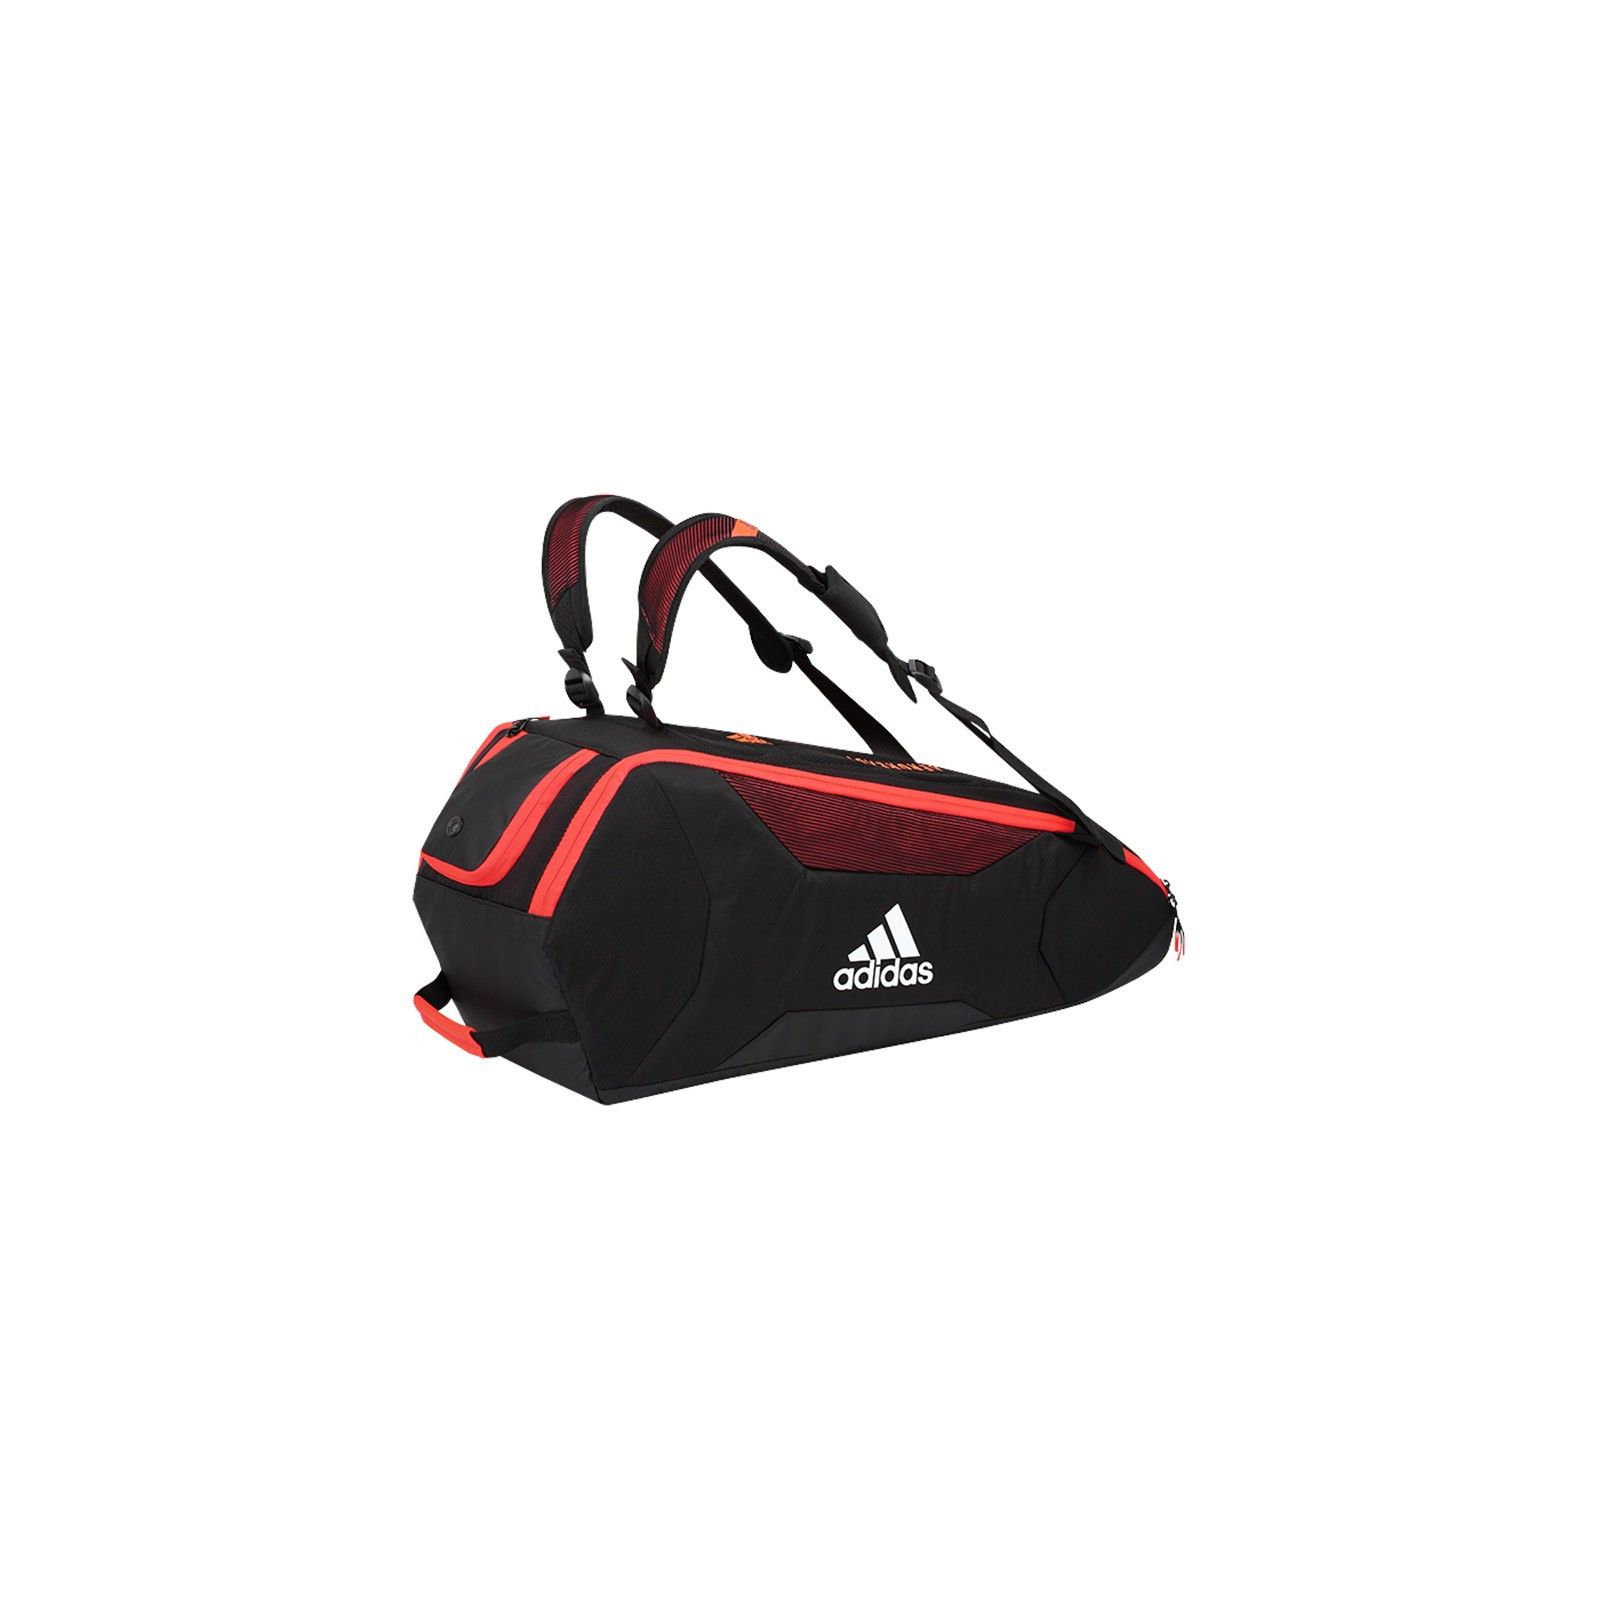 Adidas XS5 6 Racket Bag Black/Red